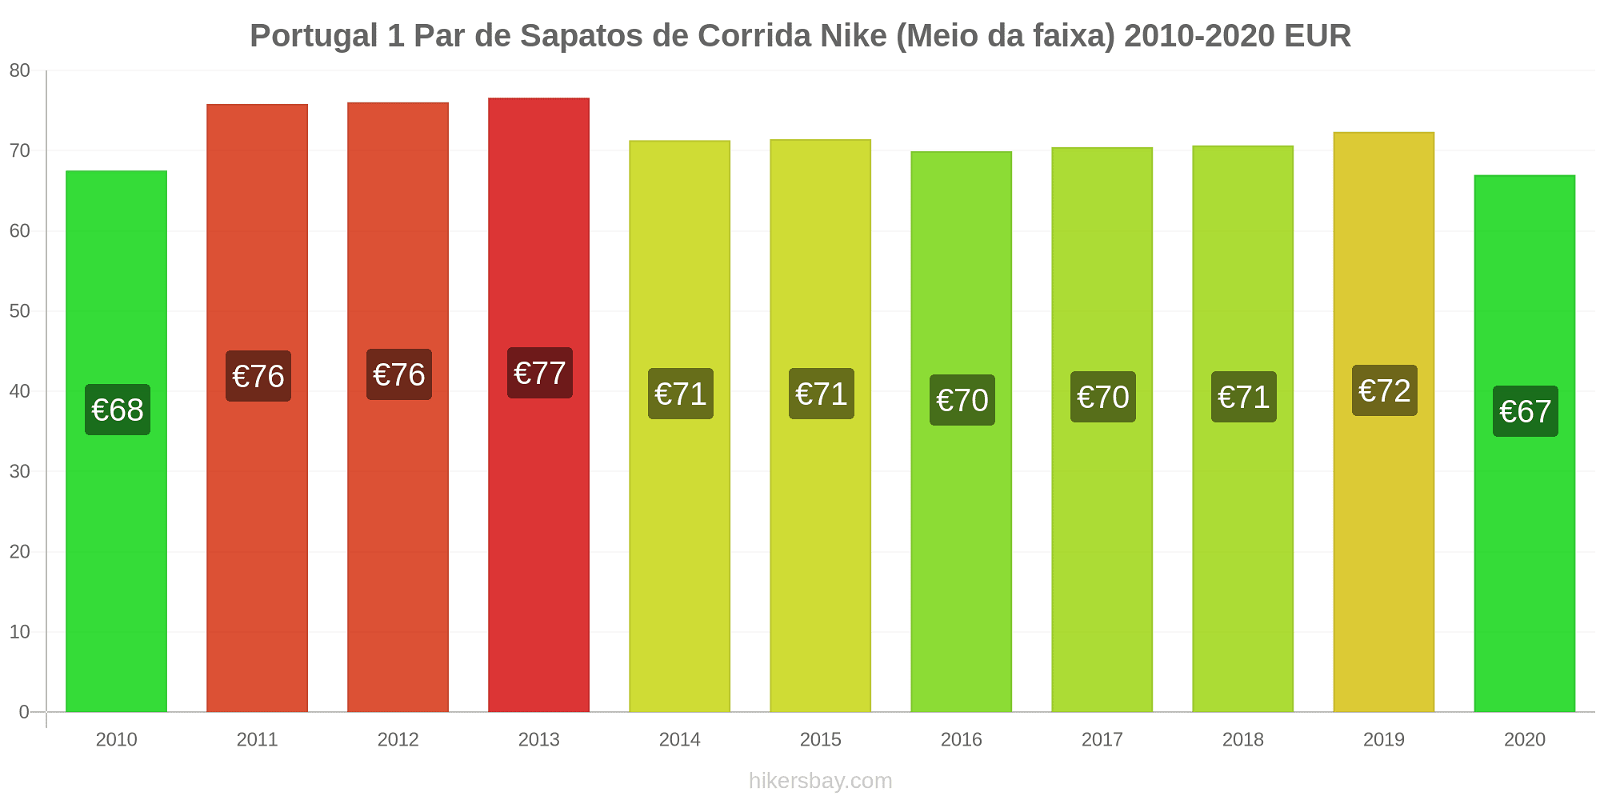 Portugal variação de preço 1 par de tênis Nike (mid-range) hikersbay.com